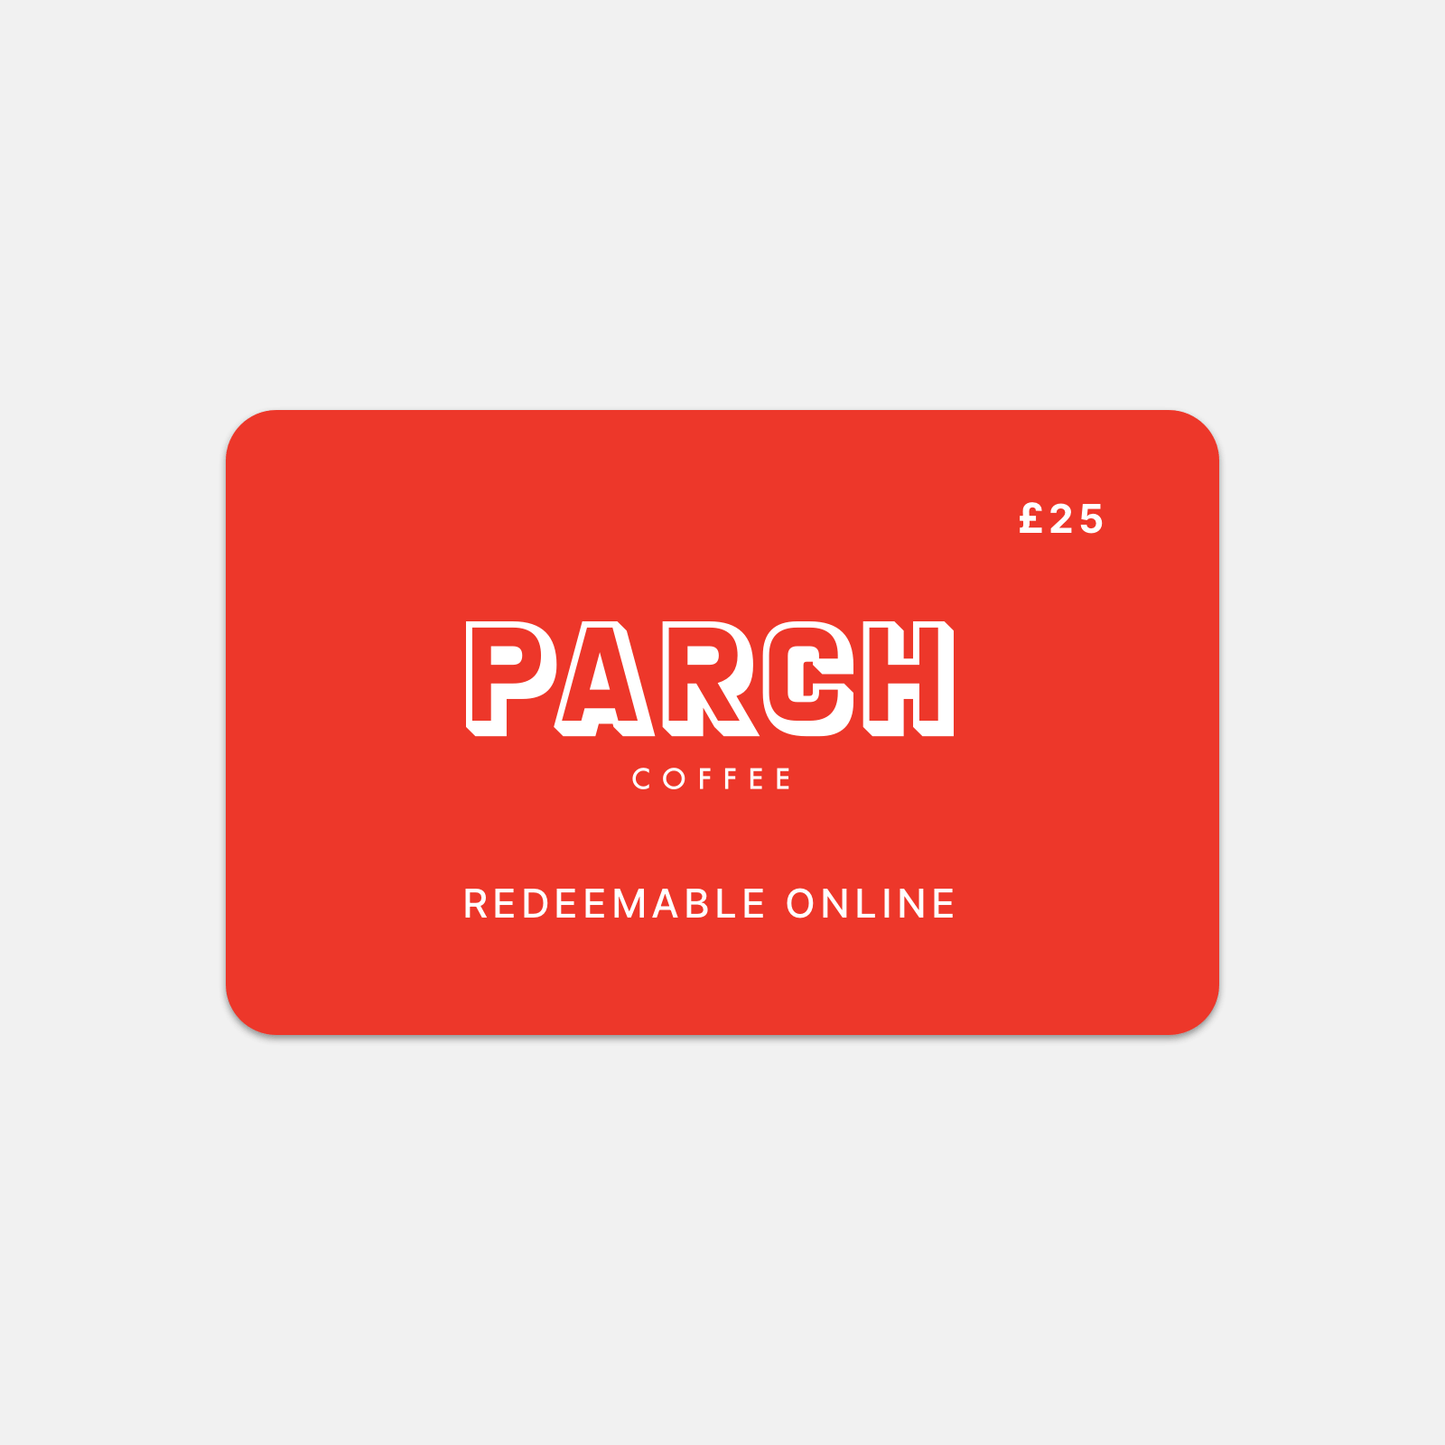 eGift voucher from Parch Coffee